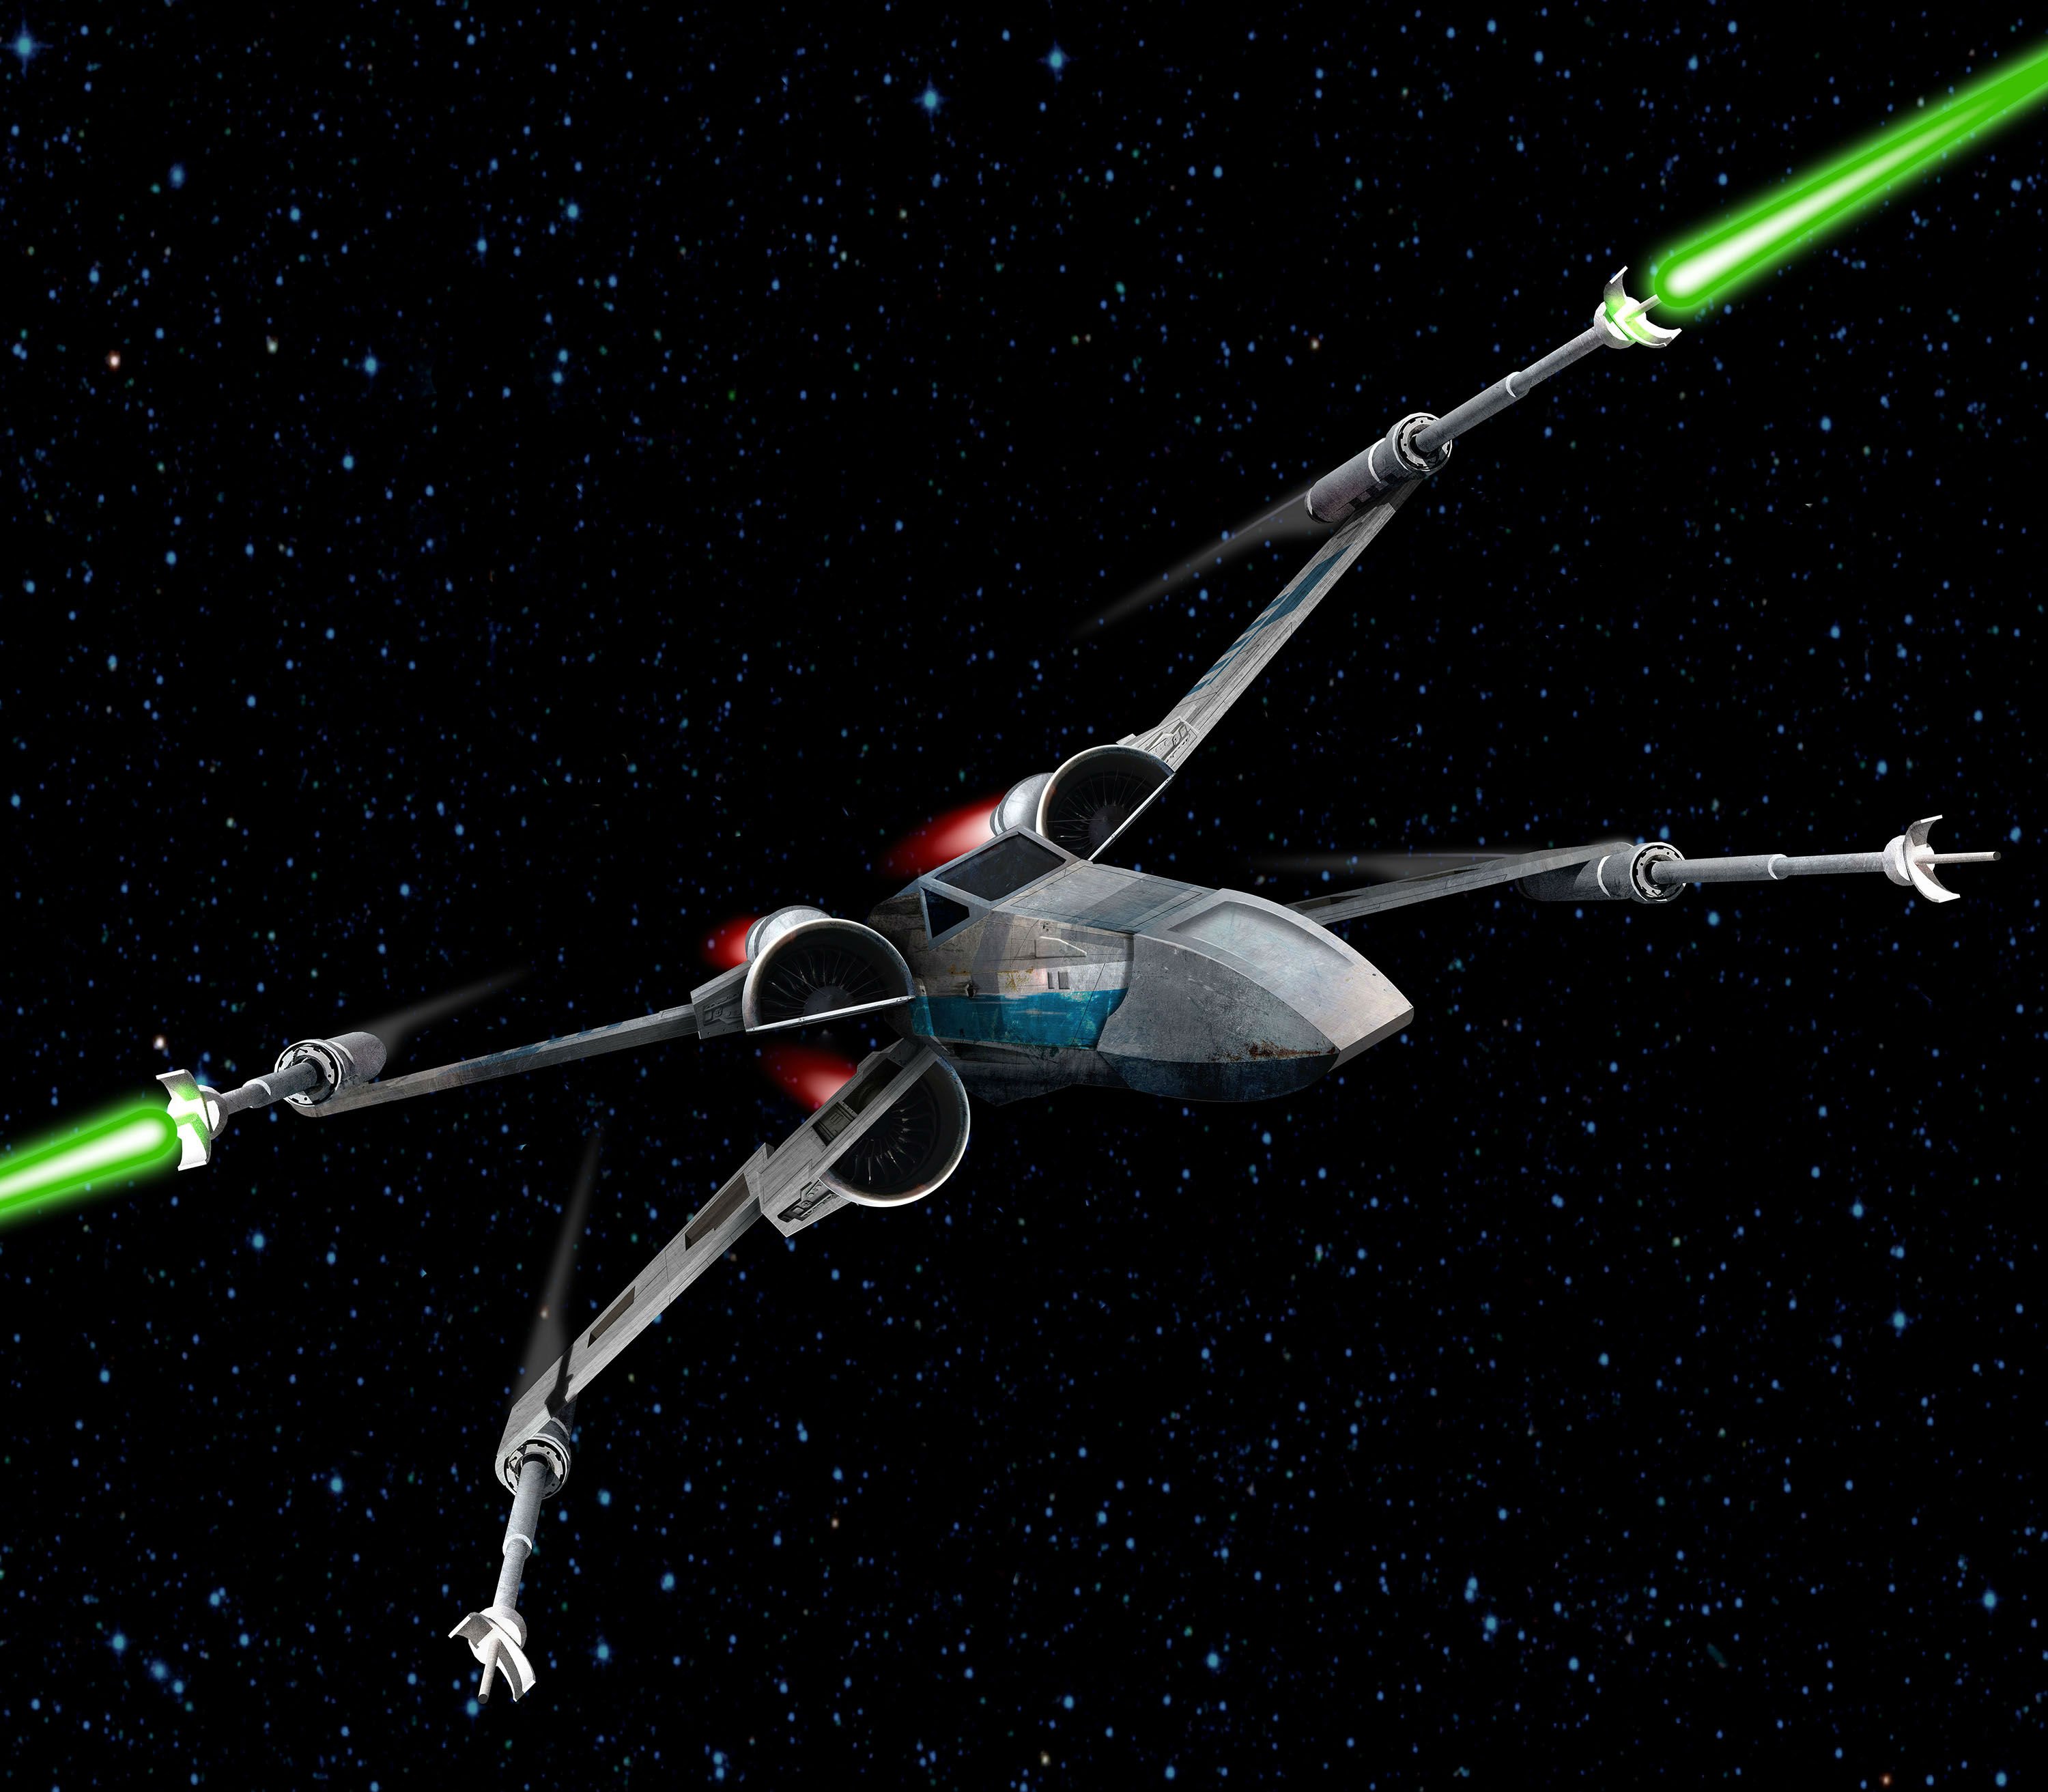 STAR WARS X -WING spaceship futuristic space sci-fi xwing ...